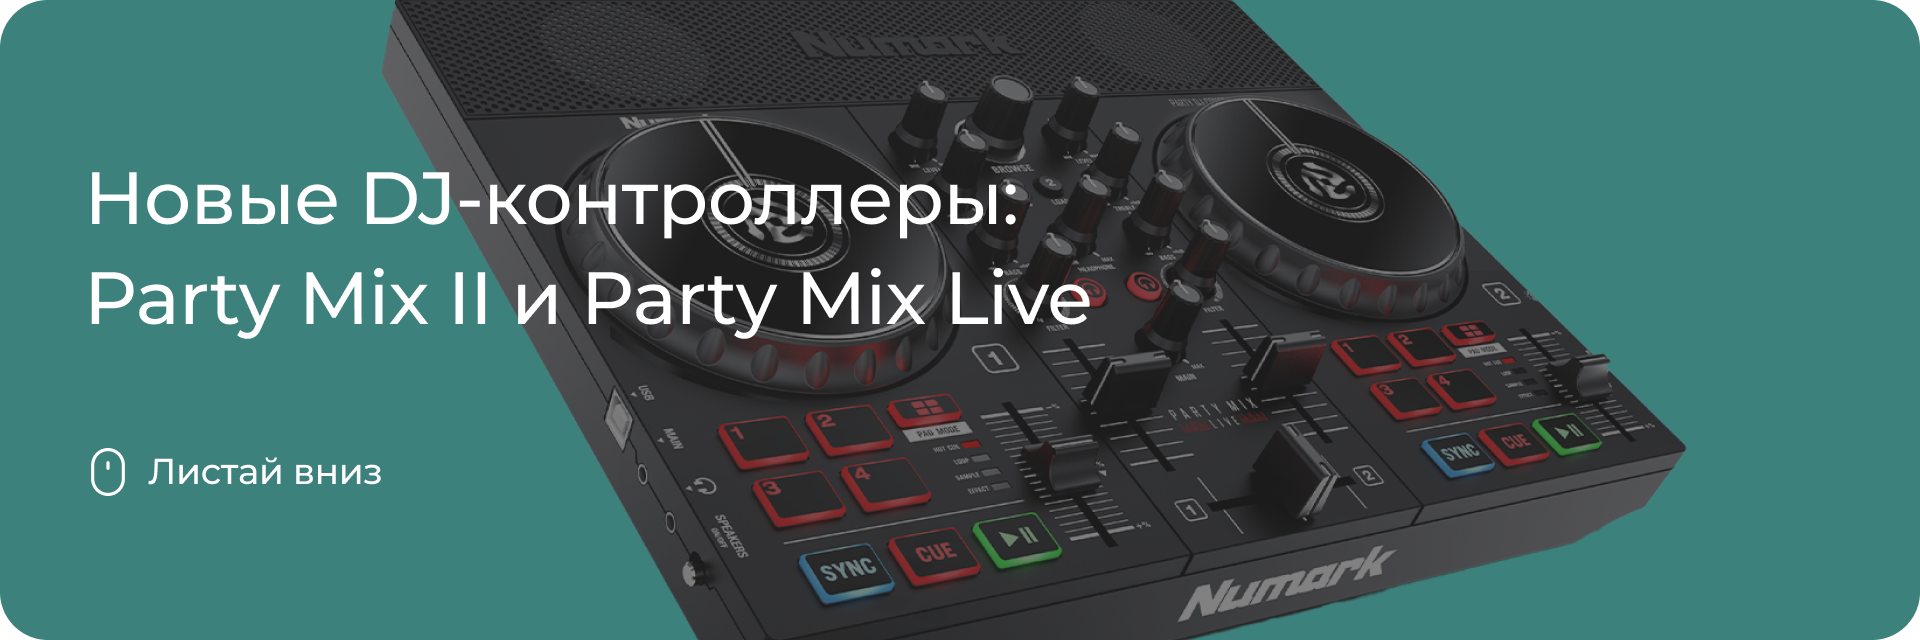 Party Mix II и Party Mix Live от Numark